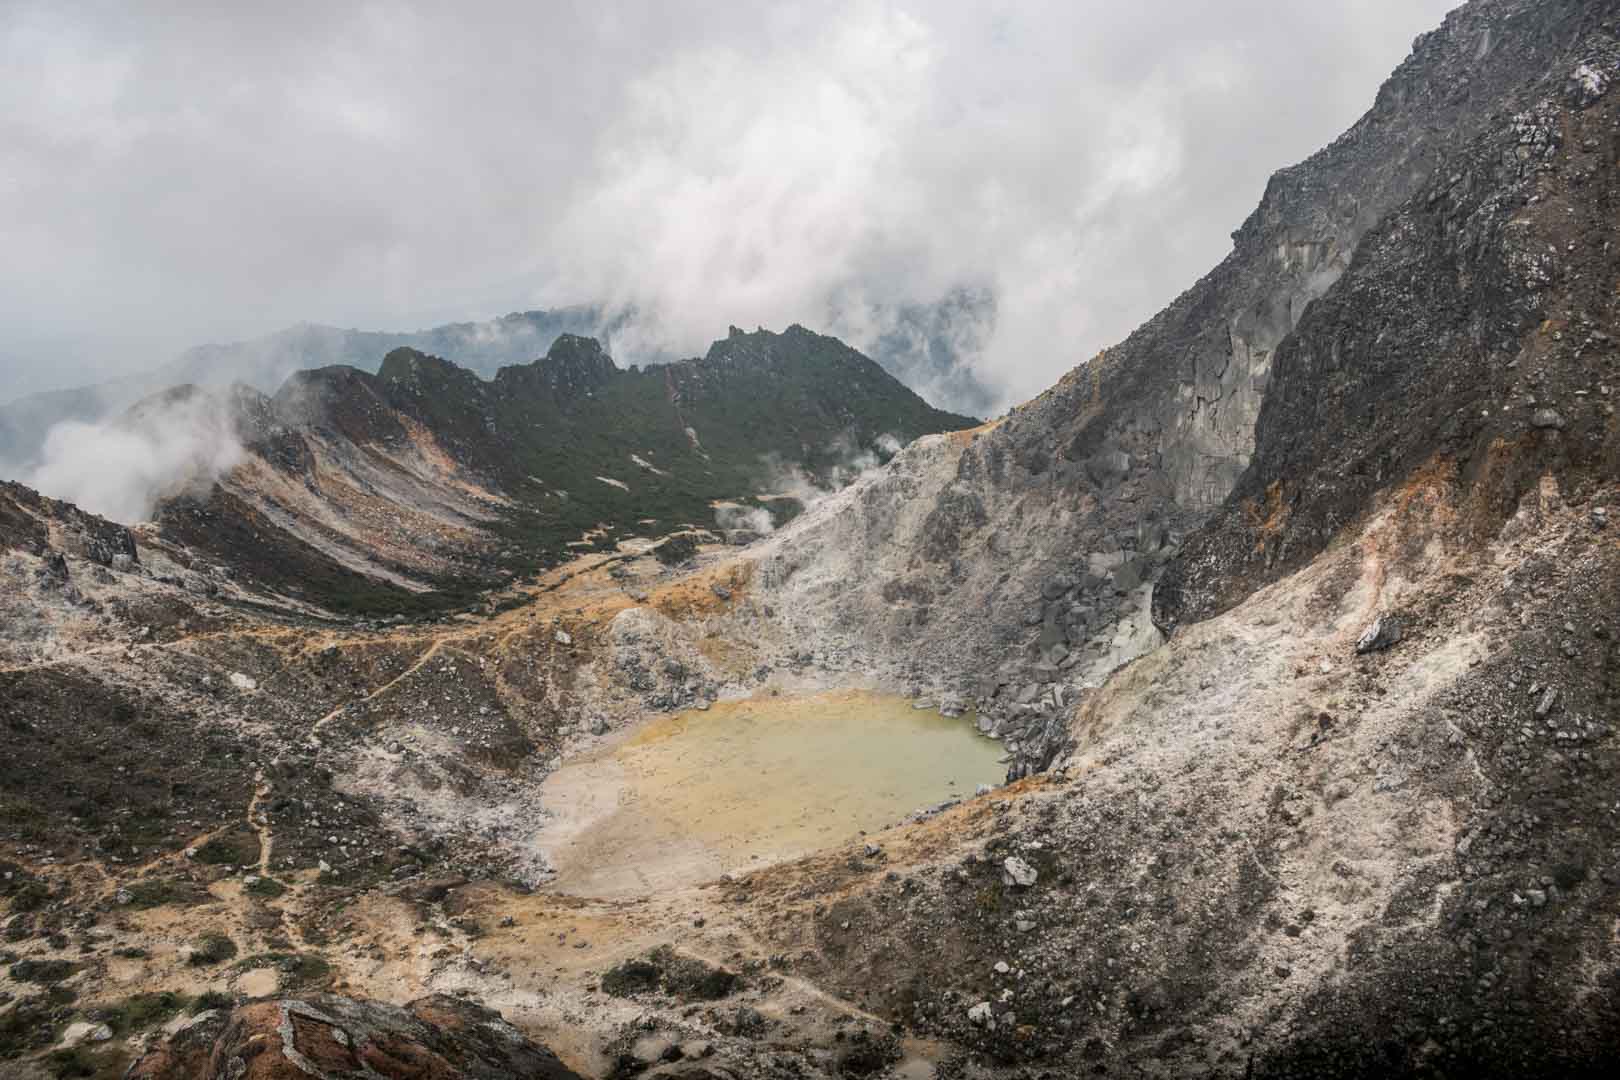 Mount Sibayak, Sumatra